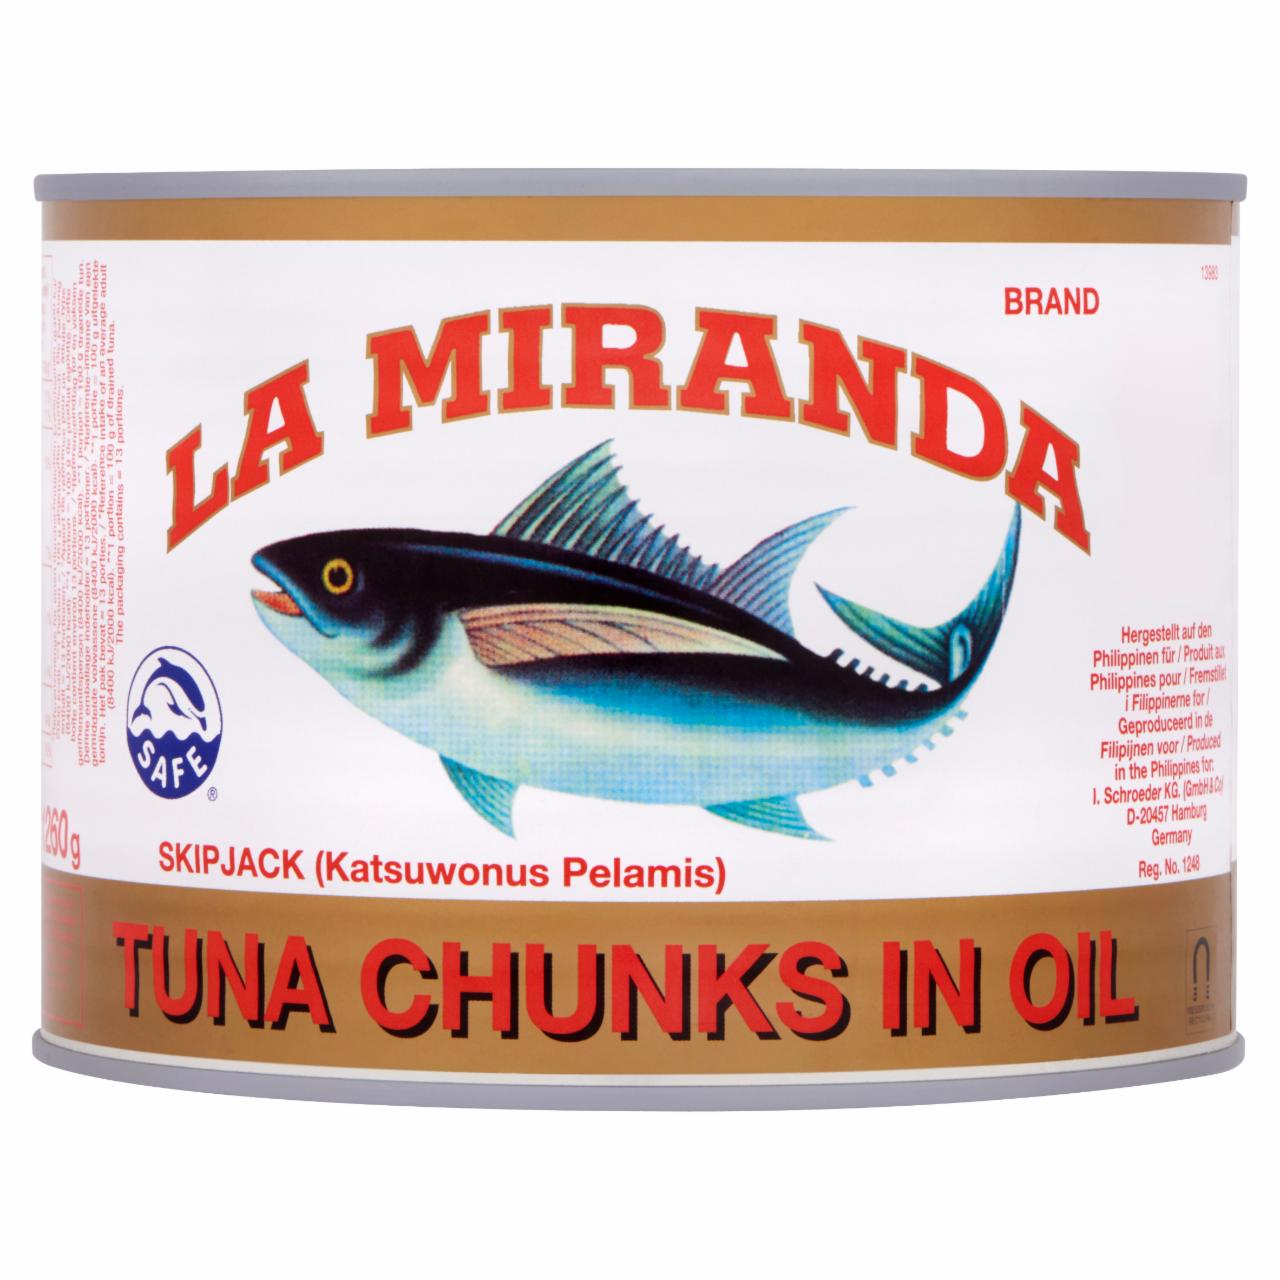 Képek - La Miranda tonhal törzsdarabok napraforgó olajban 1705 g